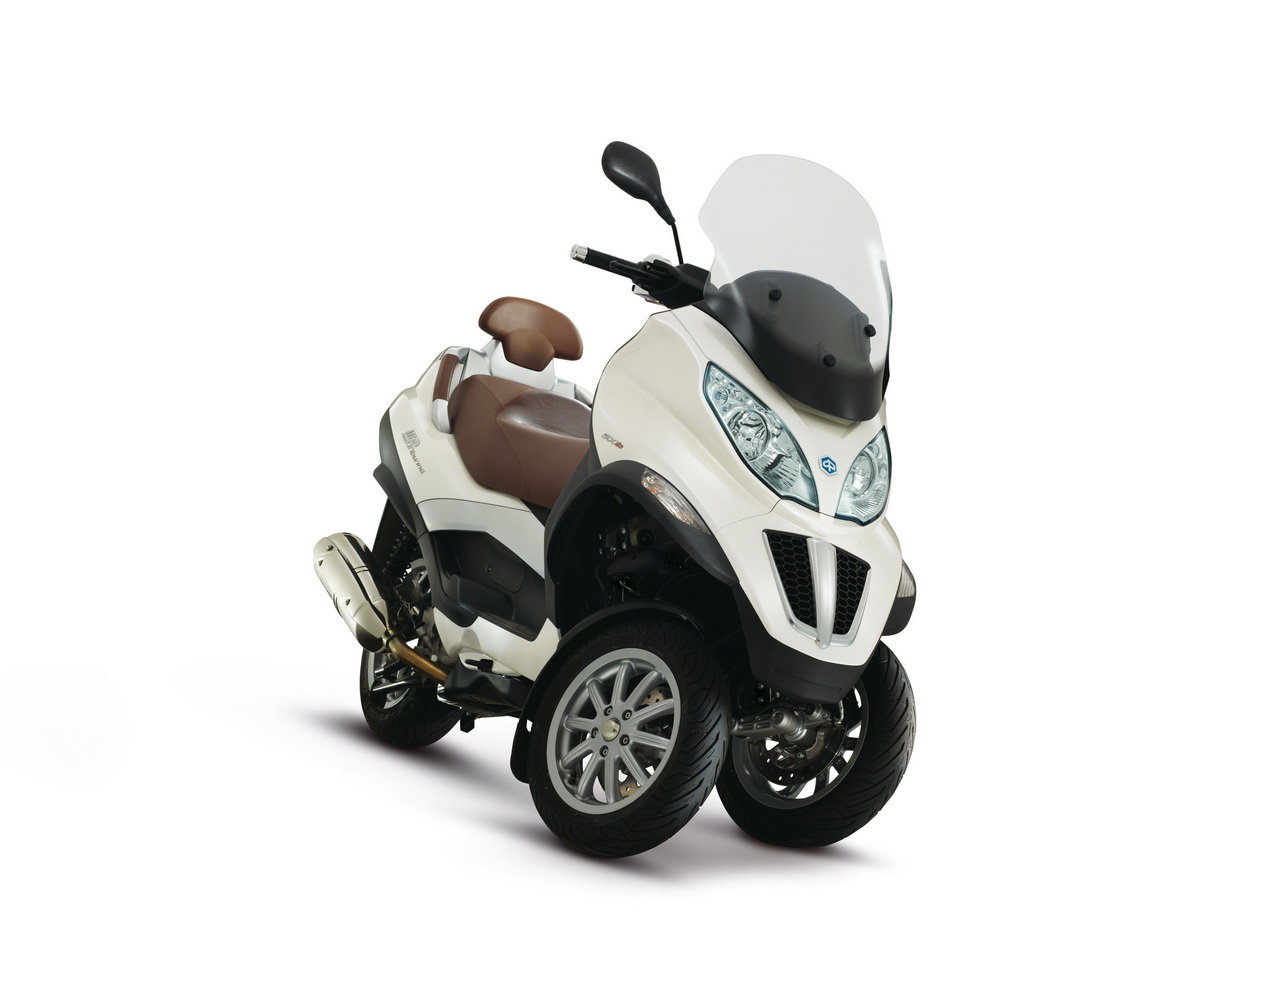 Listino Piaggio X 10 Executive 500 Scooter oltre 300 - image 15116_piaggio-mp3500-ie-business-erl on https://moto.motori.net